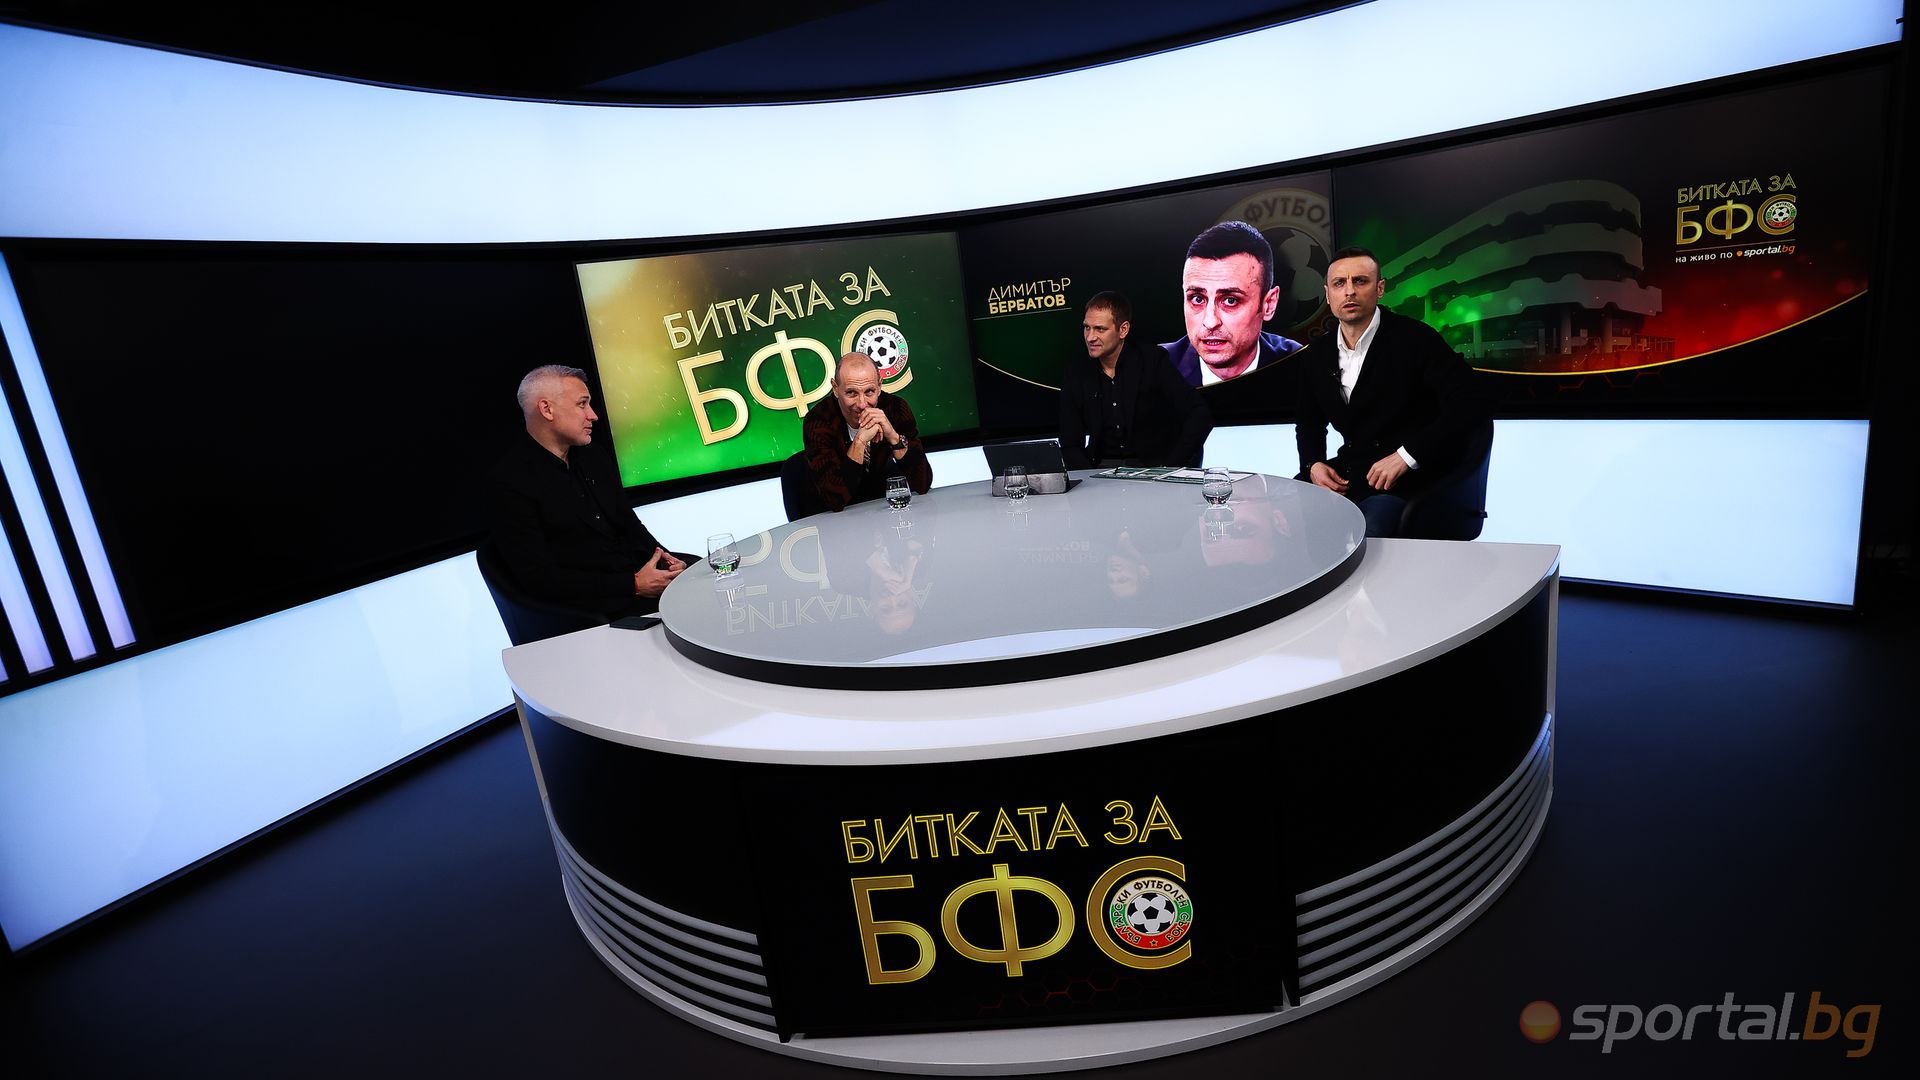 "Битката за БФС" гостуват Димитър Бербатов, Стилян Петров и Мартин Петров